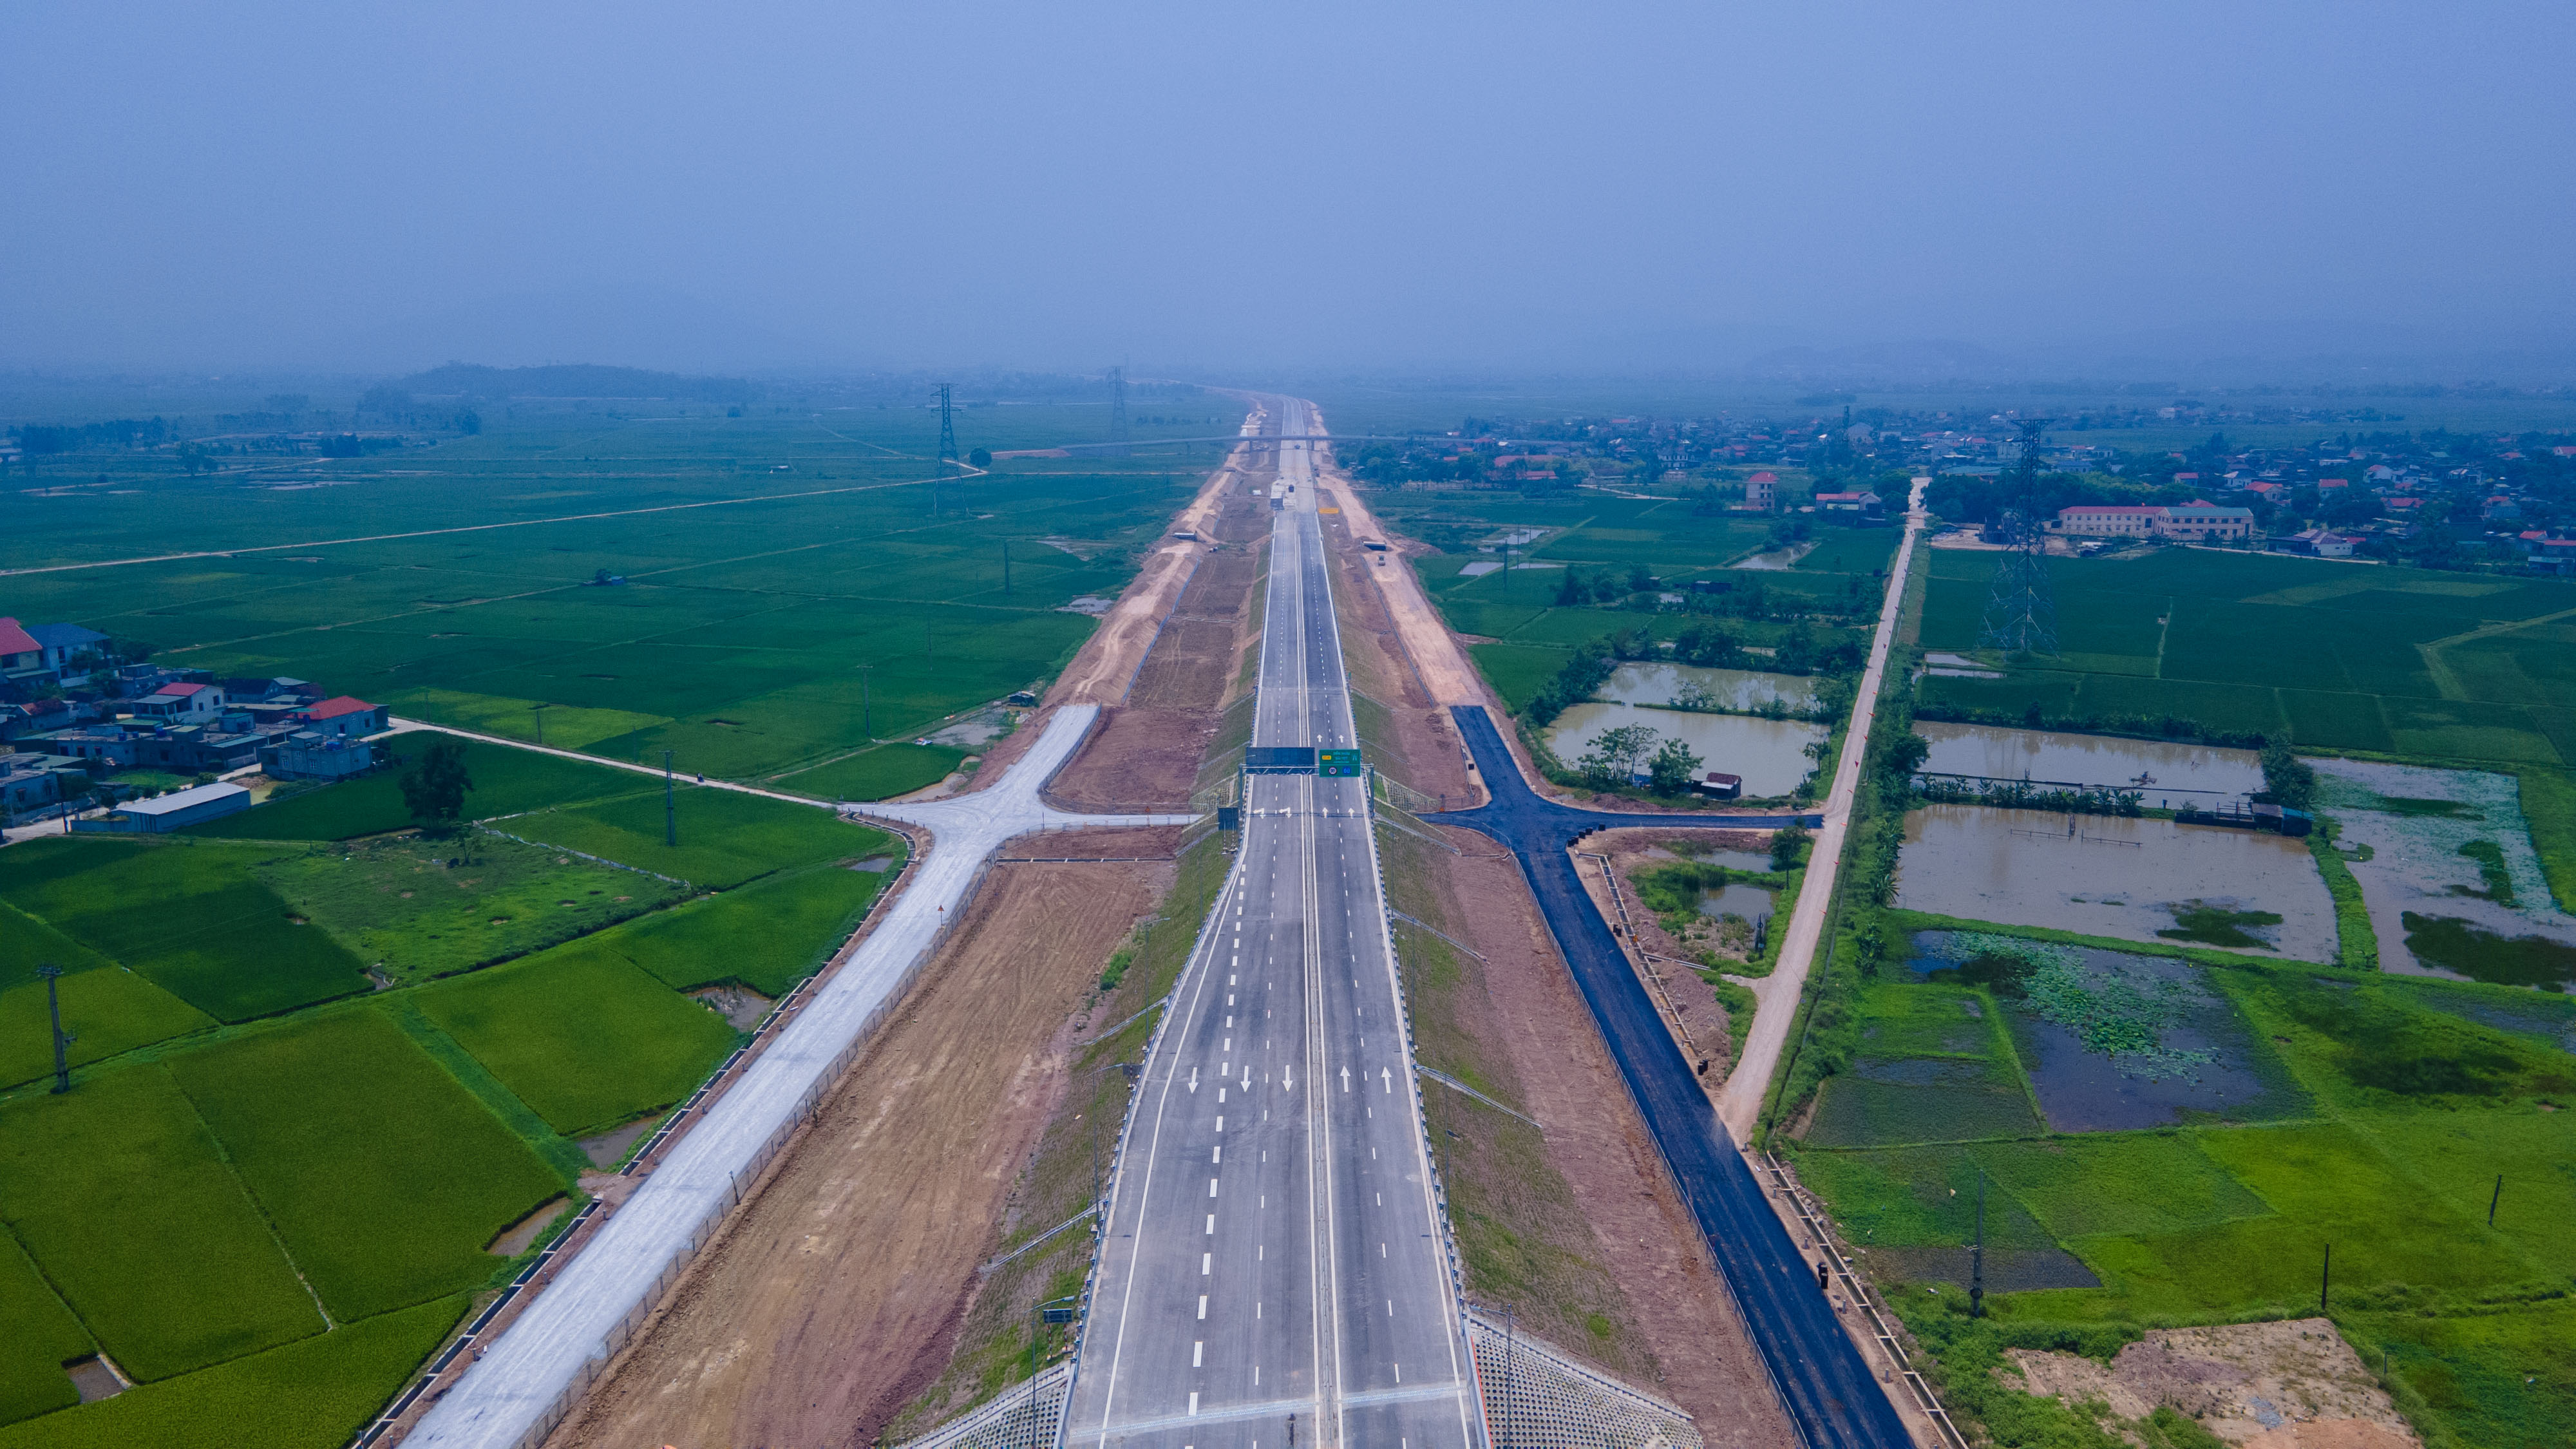  Dự án cao tốc Bắc - Nam đoạn Diễn Châu - Bãi Vọt có tổng mức đầu  tư hơn 11.150 tỷ đồng, đi qua các huyện Diễn Châu, Nghi Lộc, Hưng Nguyên (tỉnh Nghệ An) với tổng chiều dài 44,4 km và huyện Đức Thọ, tỉnh Hà Tĩnh.